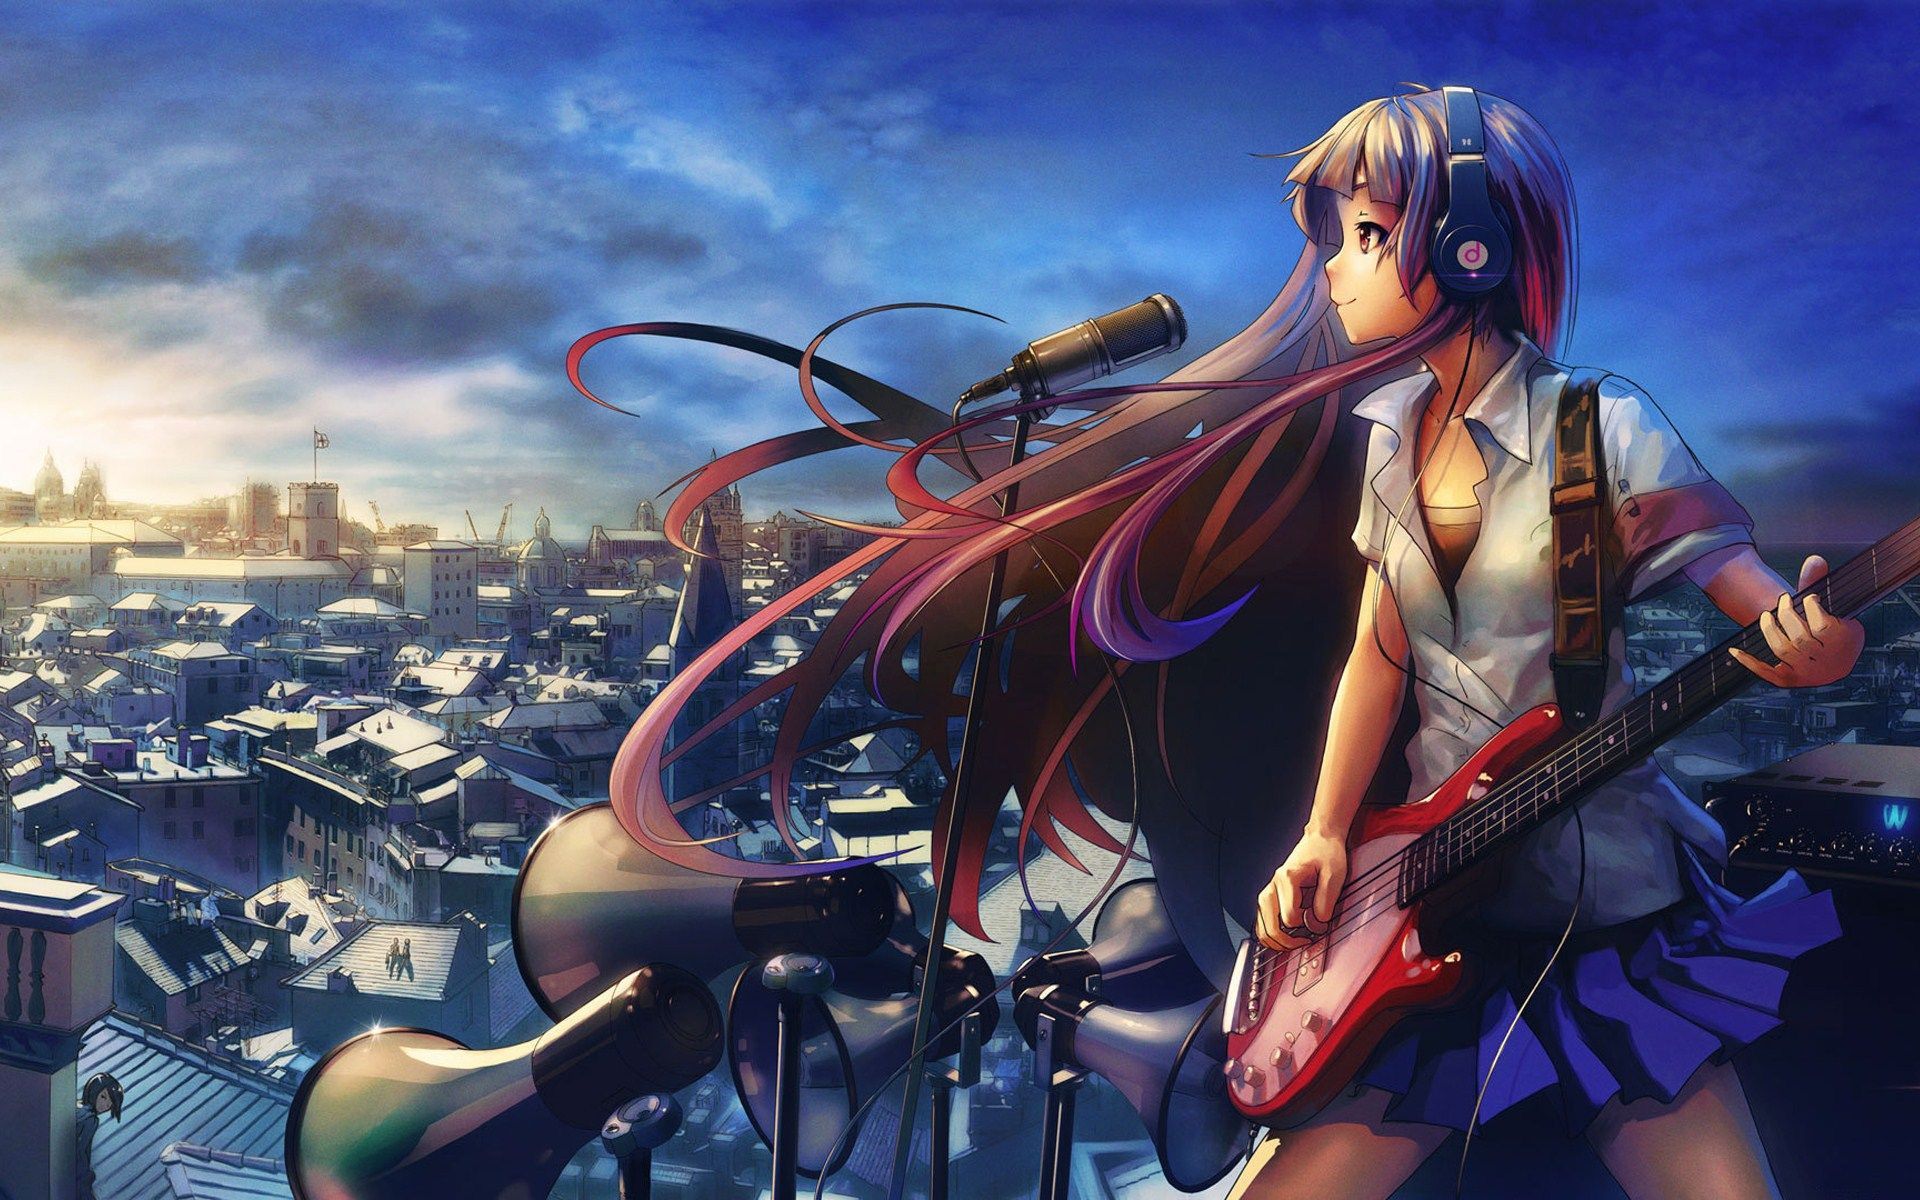 Anime Girls With Guitar Desktop HD Wallpaper in HD HQ Picture. Anime, Hình ảnh, Nhạc điện tử